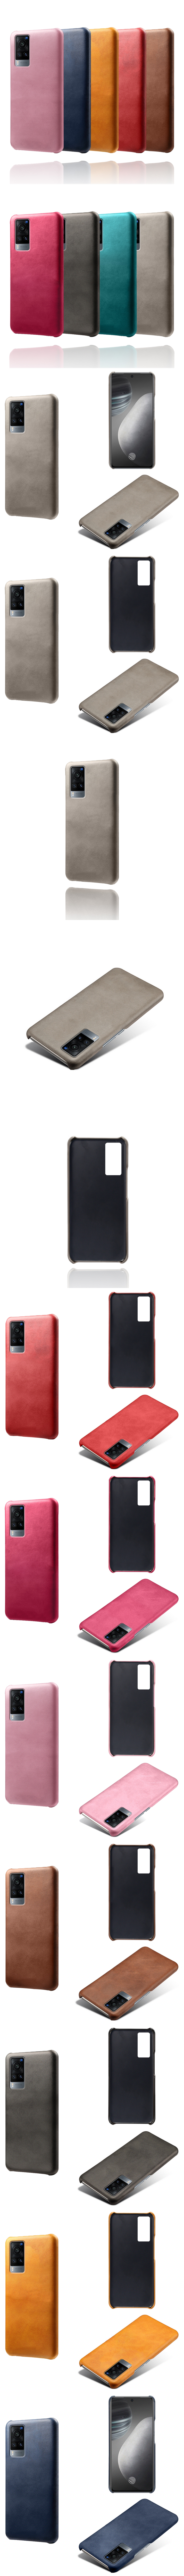 Vivo X60 皮革保護殼(PLAIN) - 牛皮仿真皮紋單色背蓋素色多色手機殼保護套手機套